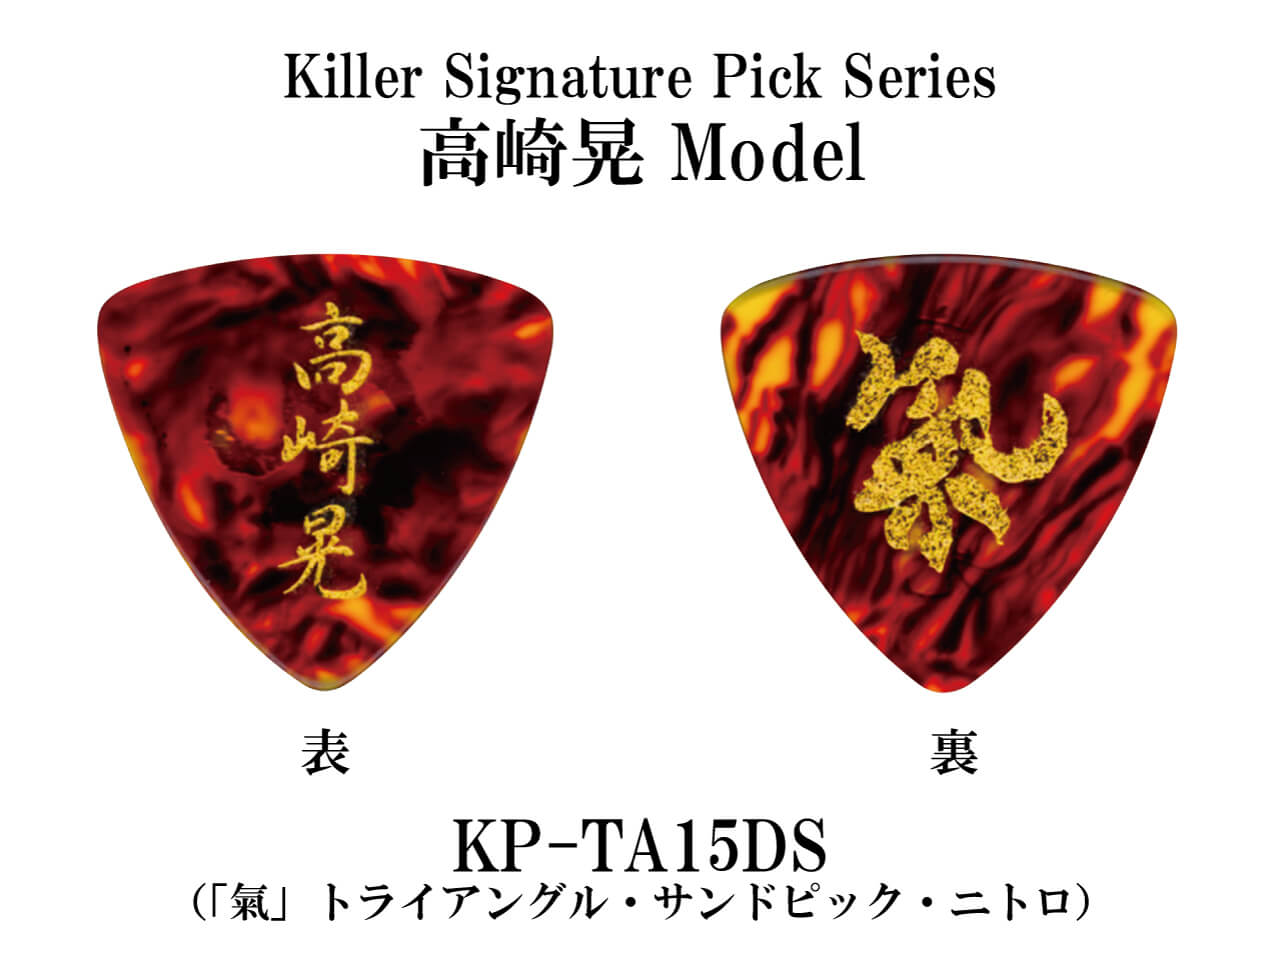 Killer(キラー) Signature Pick Series KP-TA15DSニトロ (LOUDNESS/高崎晃モデル)